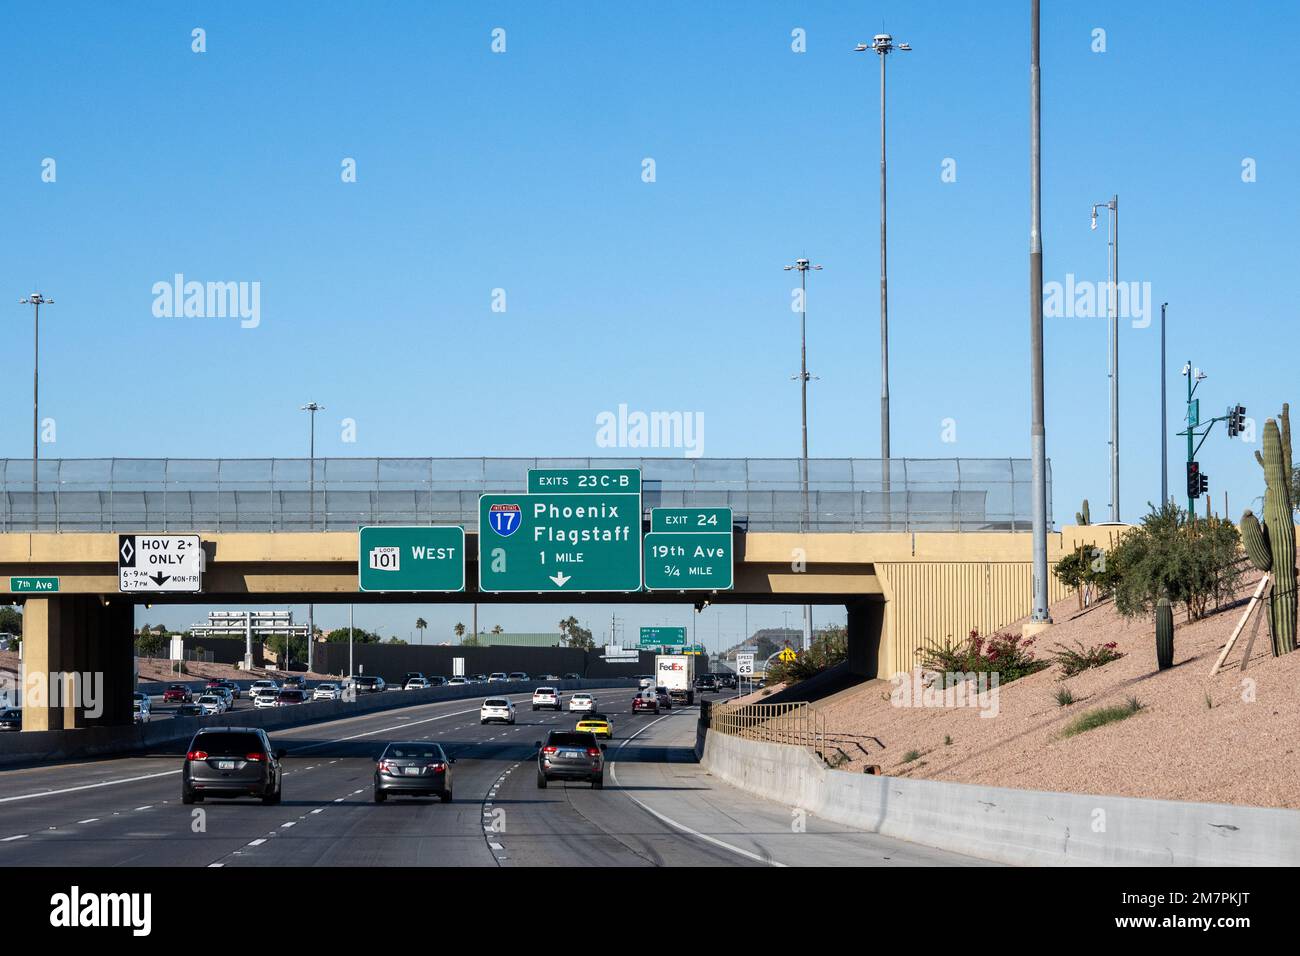 Phoenix, AZ - 17 novembre 2022 : panneaux sur la Pima Freeway, Loop 101 West pour la sortie 23 C - B Interstate 17 vers Flagstaff ou Phoenix et sortie 24 pour 19th Banque D'Images